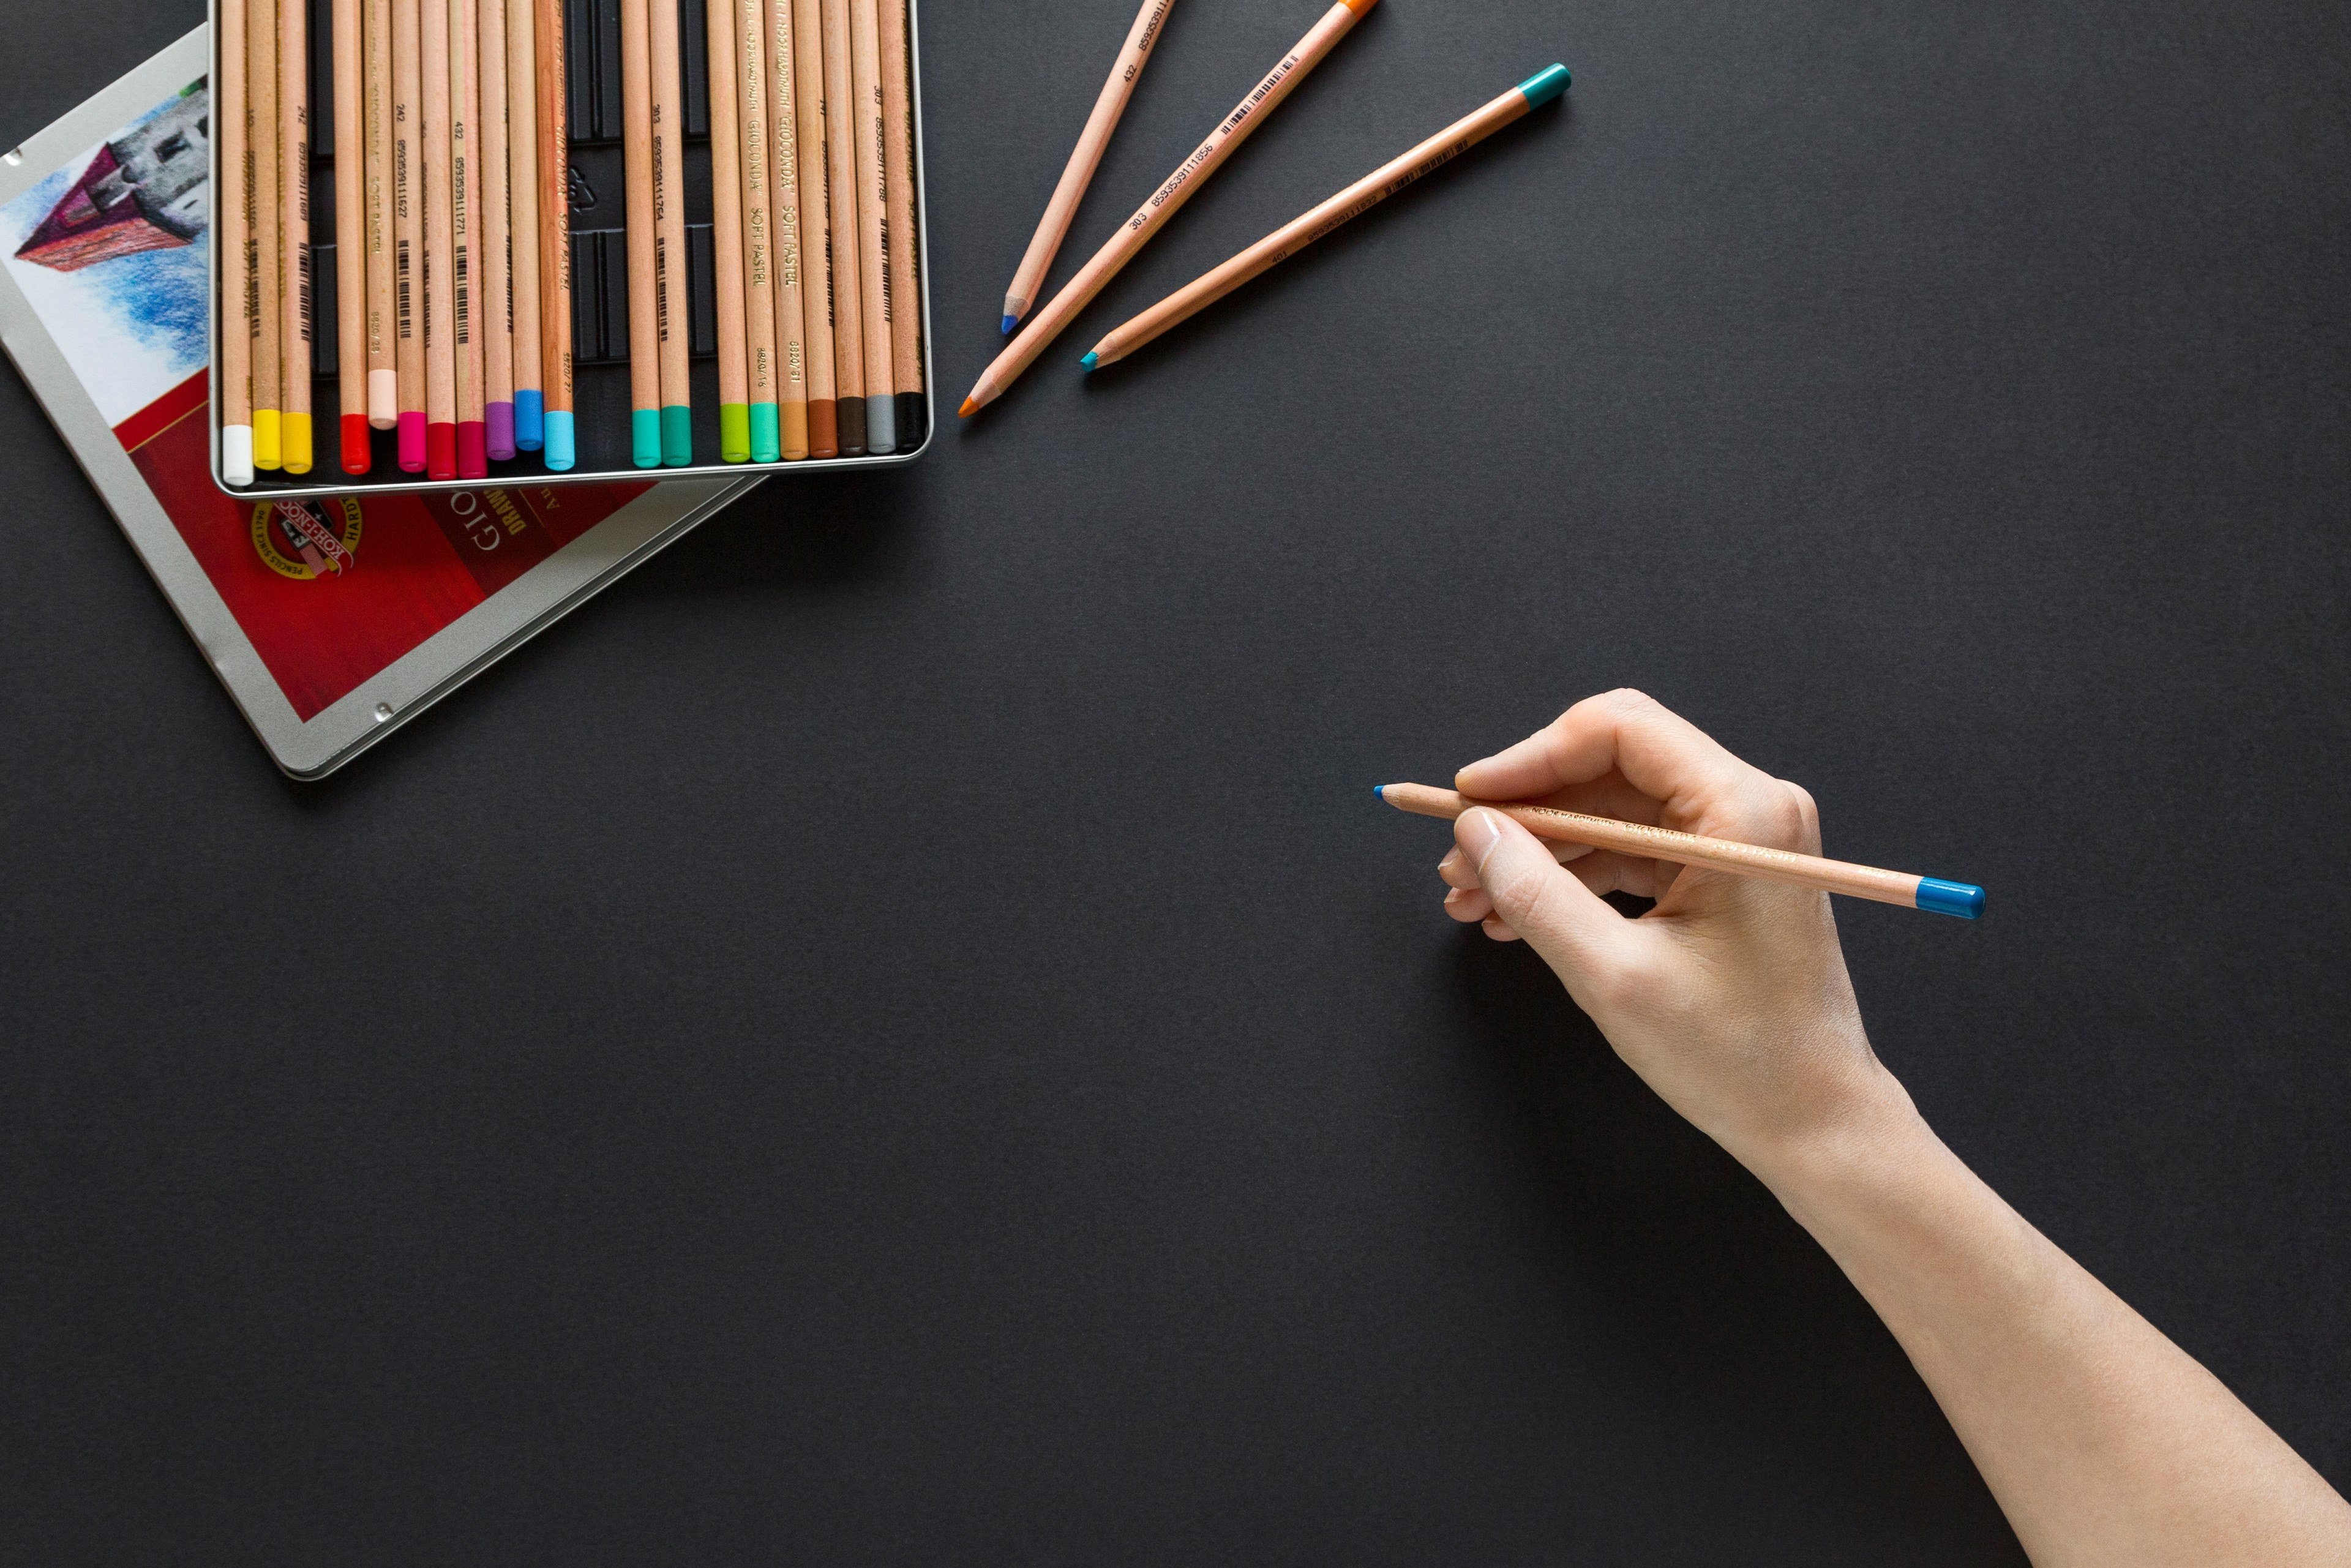 عکس زیبا و دیدنی از مداد رنگی های زیبا با روکش چوبی 